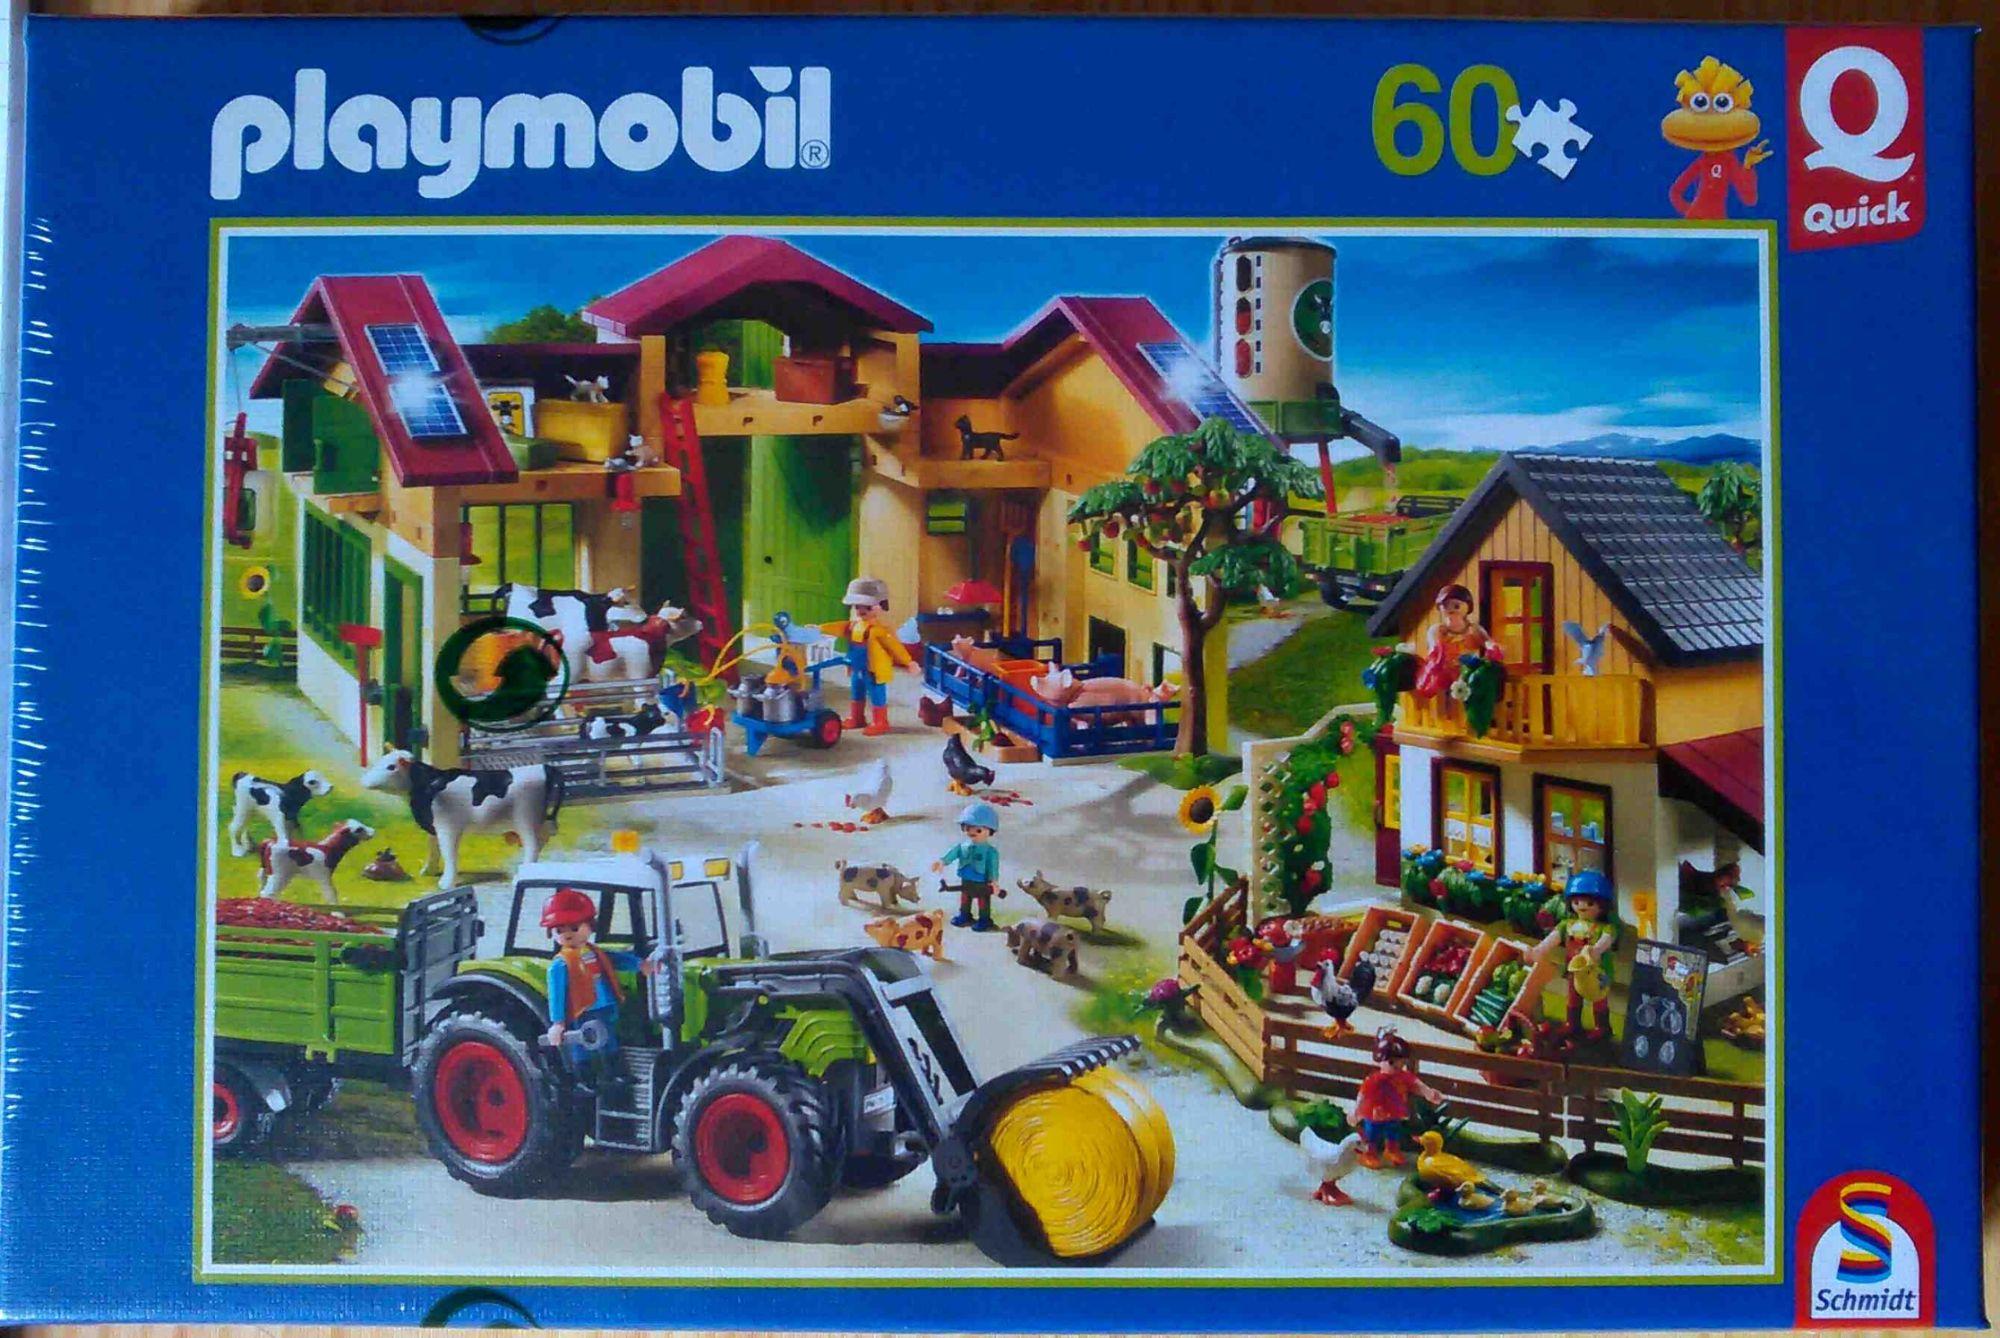 Playmobil Puzzle La Ferme 60 pièces Pocket Quick